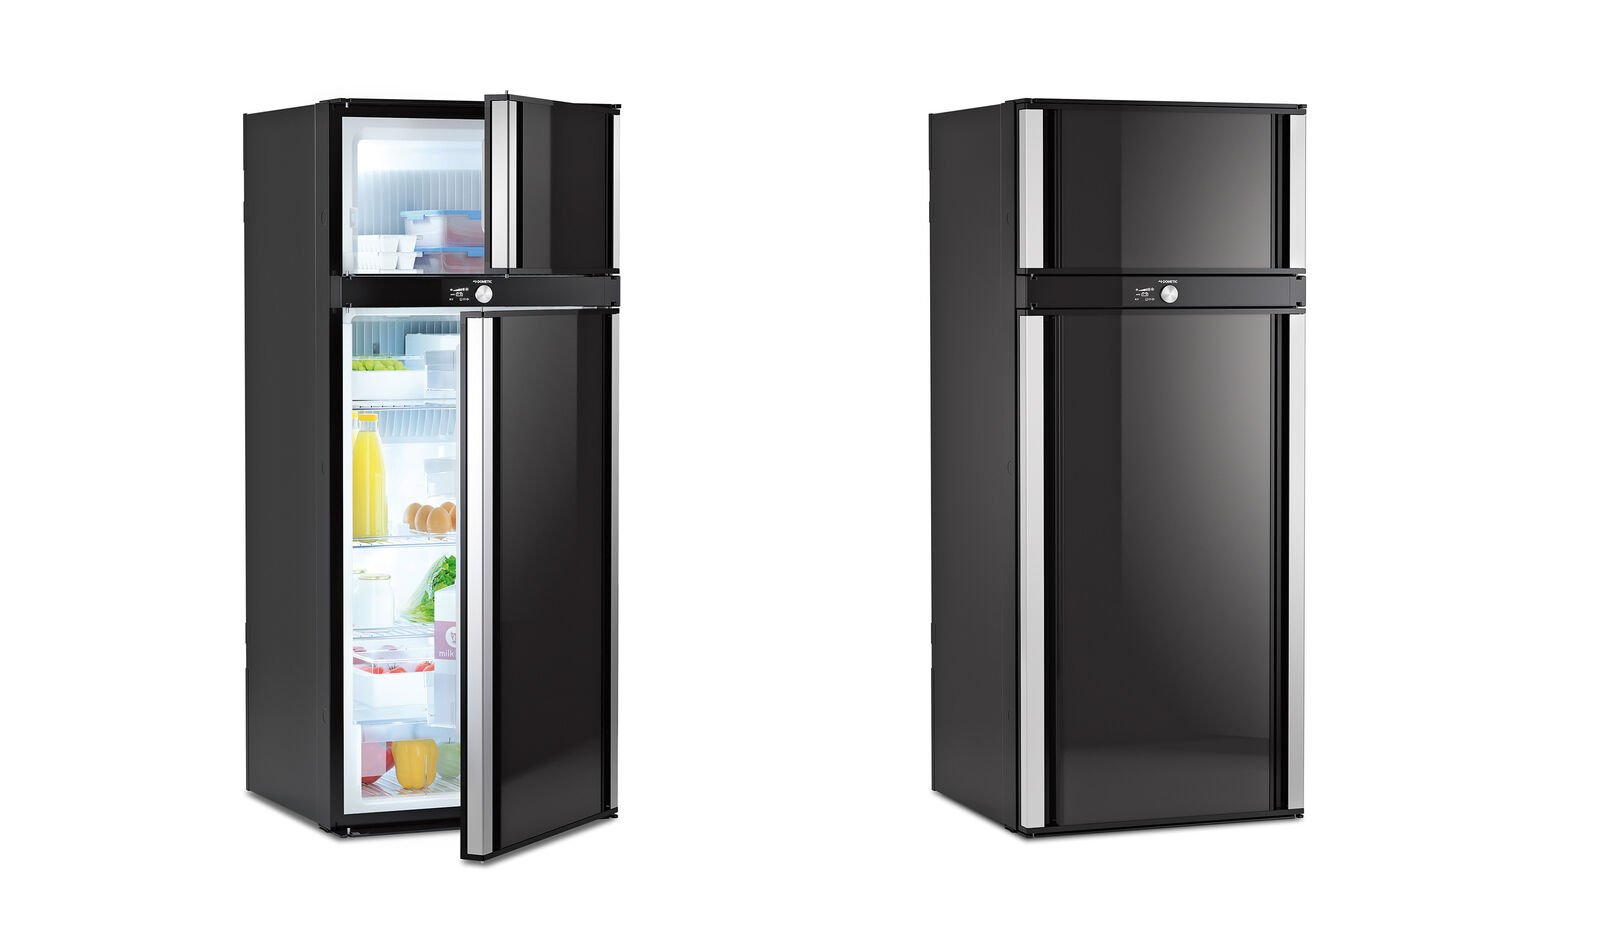 Le nouveau réfrigérateur Dometic RMD 10 : Ses portes s’ouvrent des deux côtés pour un niveau de confort et de flexibilité optimal. 